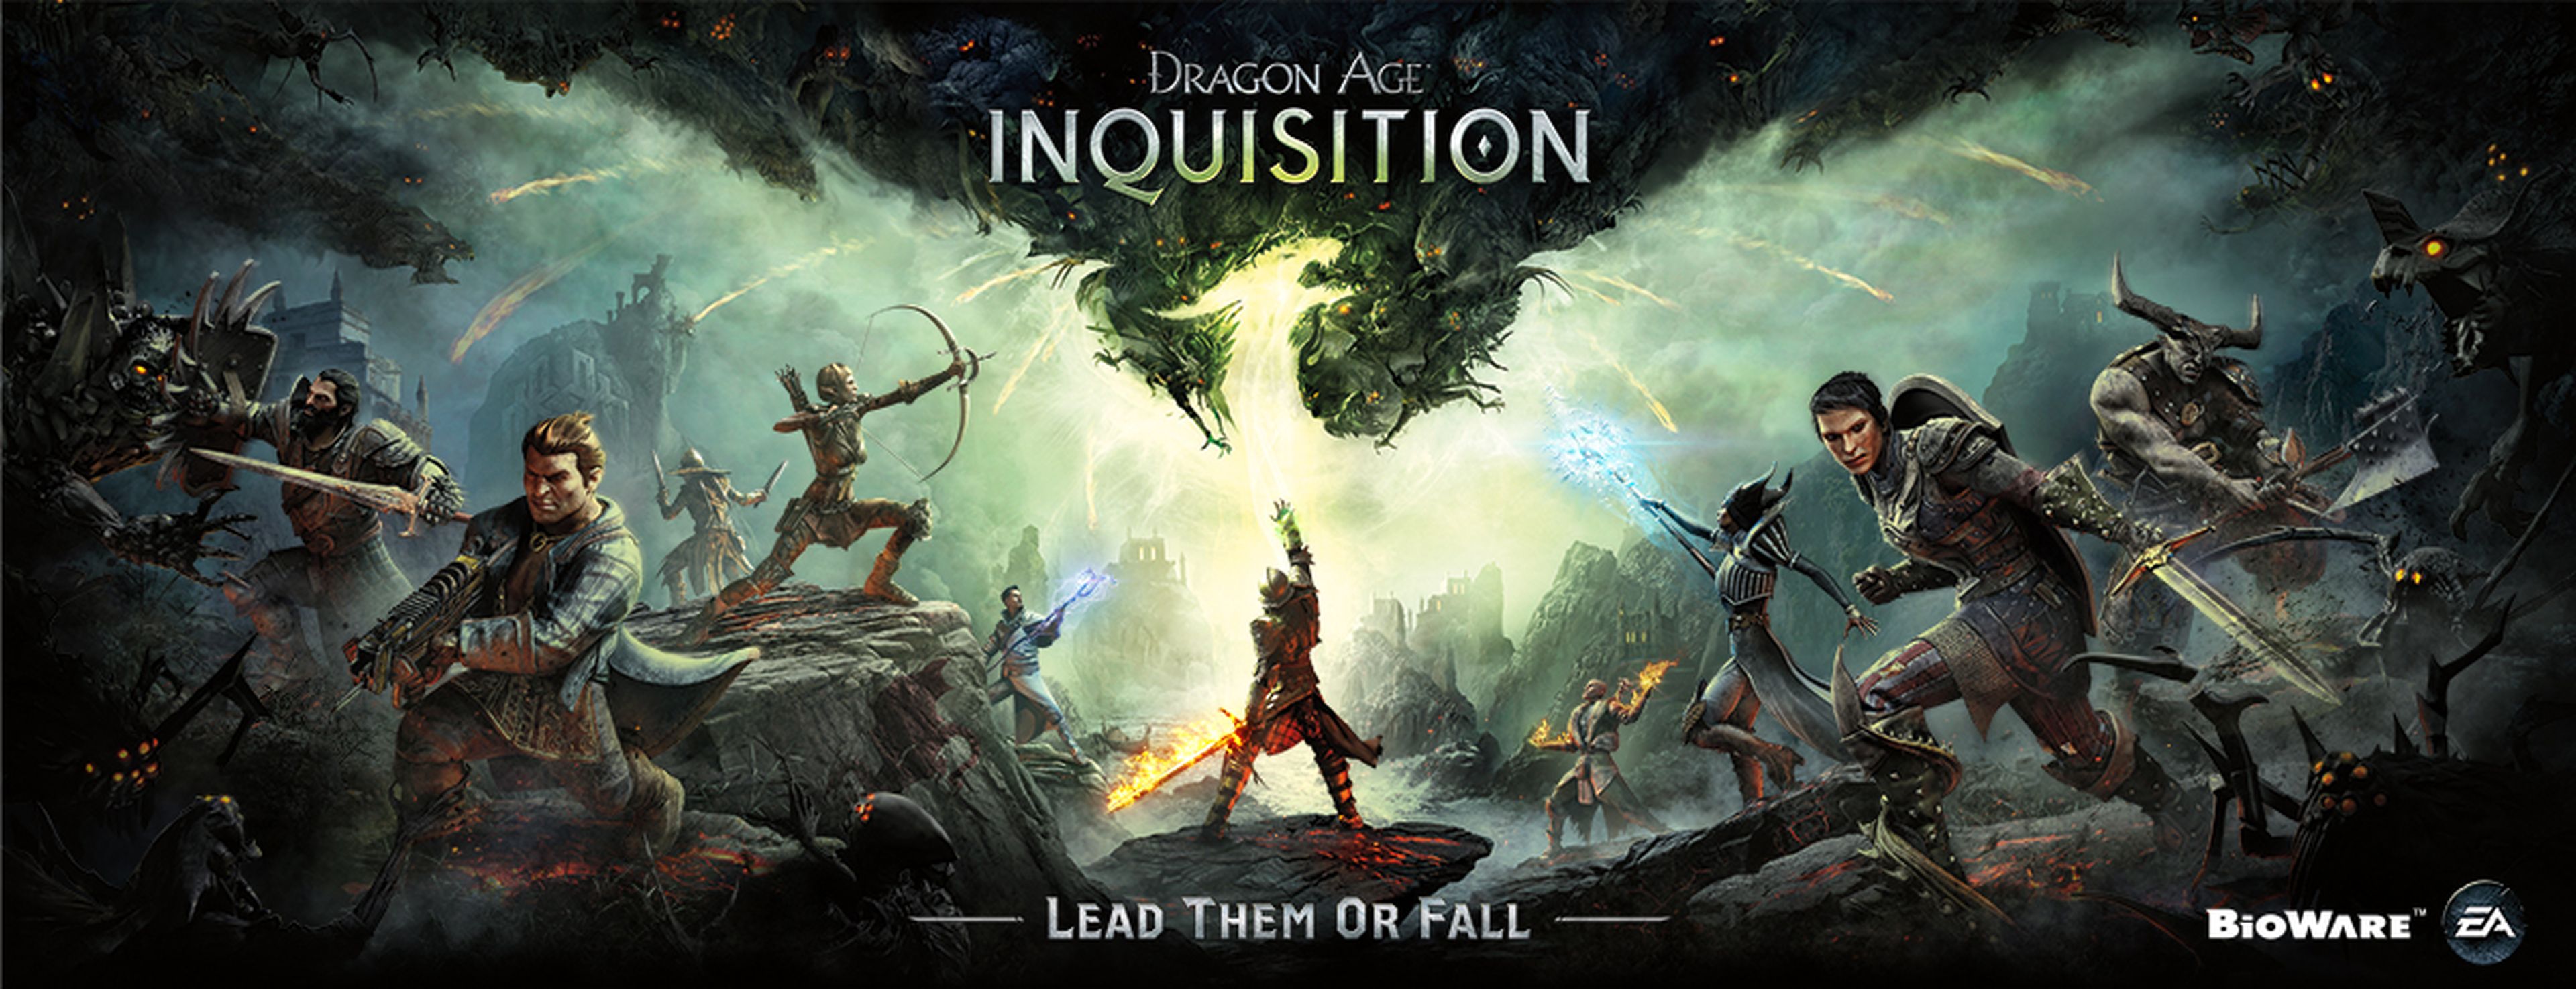 Imágenes con los personajes de Dragon Age Inquisition